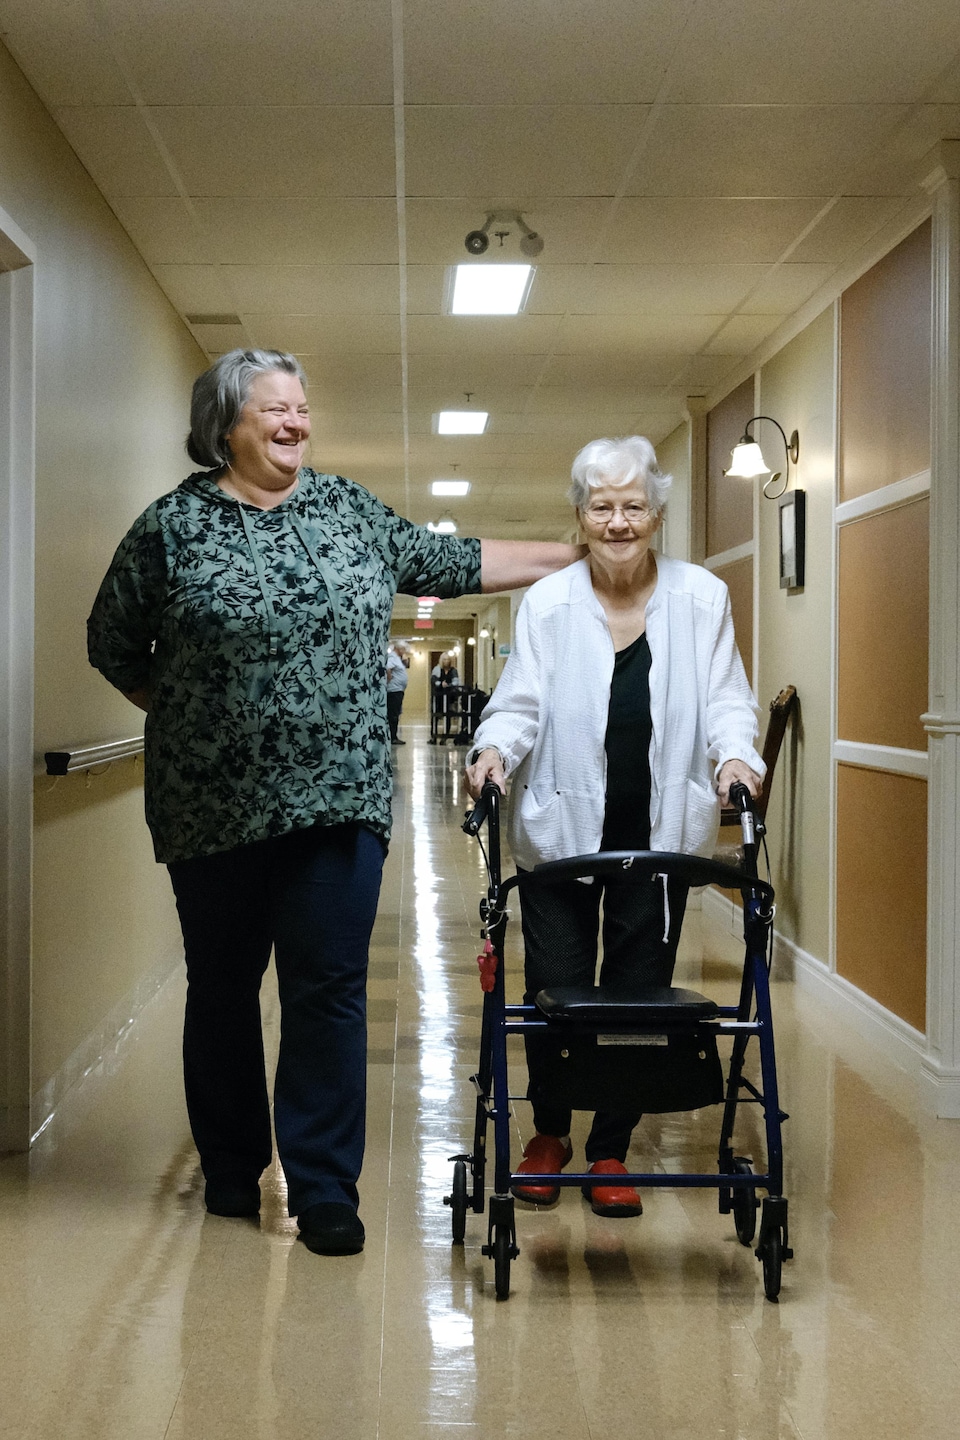 Isabelle Morasse et Rollande Camirand-Morasse marchent dans un couloir d'une résidence pour aînés.